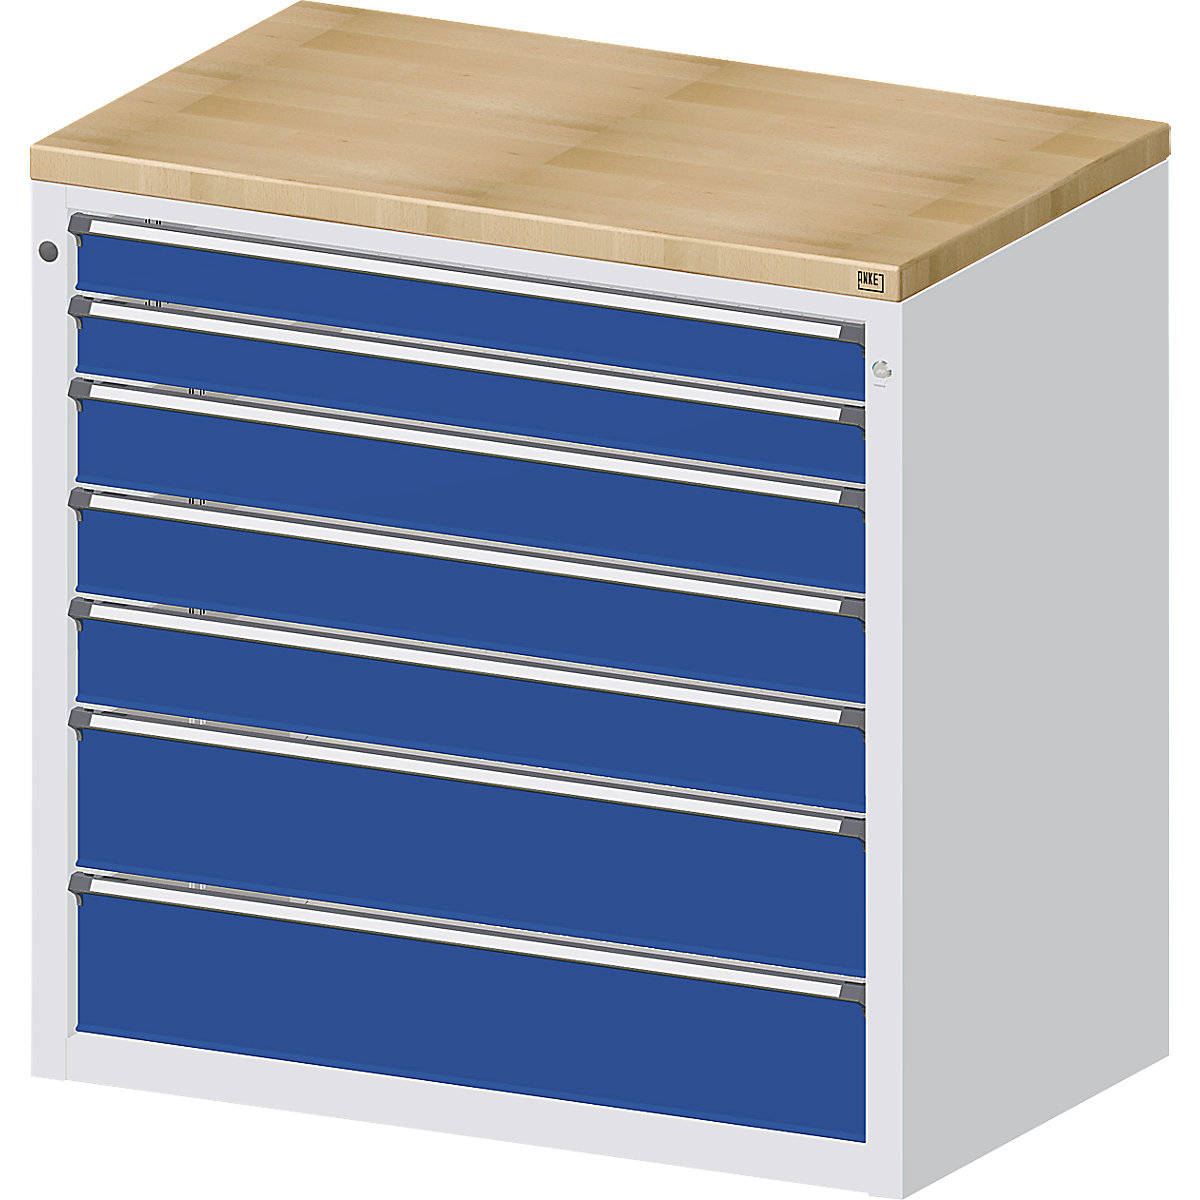 ANKE – Armoire pour comptoir de distribution, 2 tiroirs 90 mm, 3 tiroirs 120 mm, 2 tiroirs 180 mm, gris / bleu